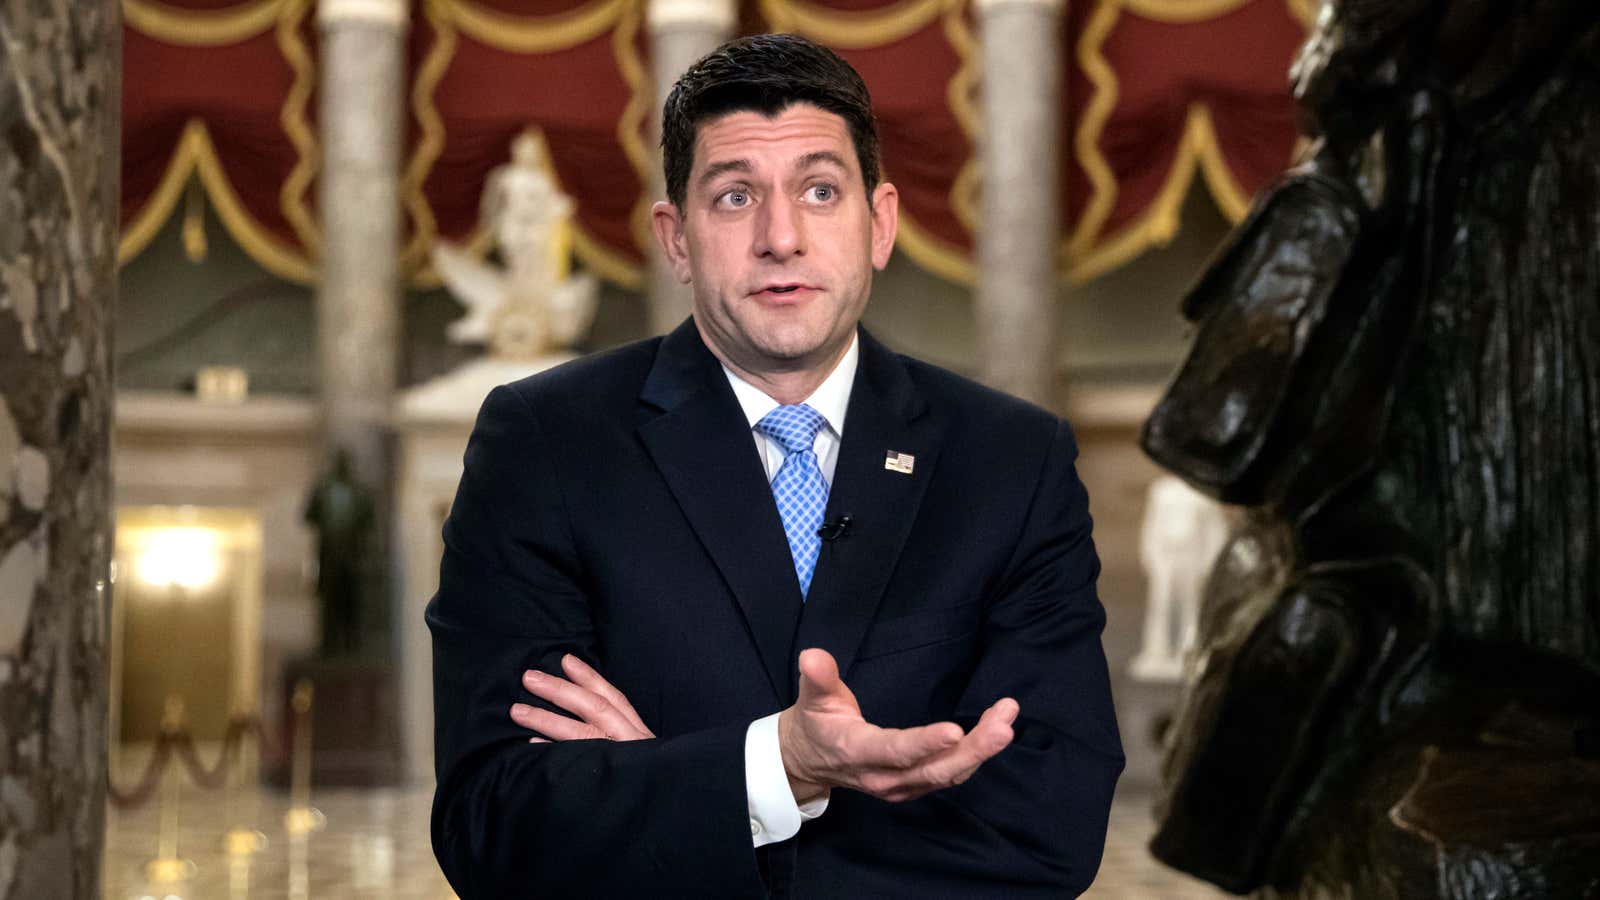 Speaker of the House Paul Ryan is losing lawmakers fast.